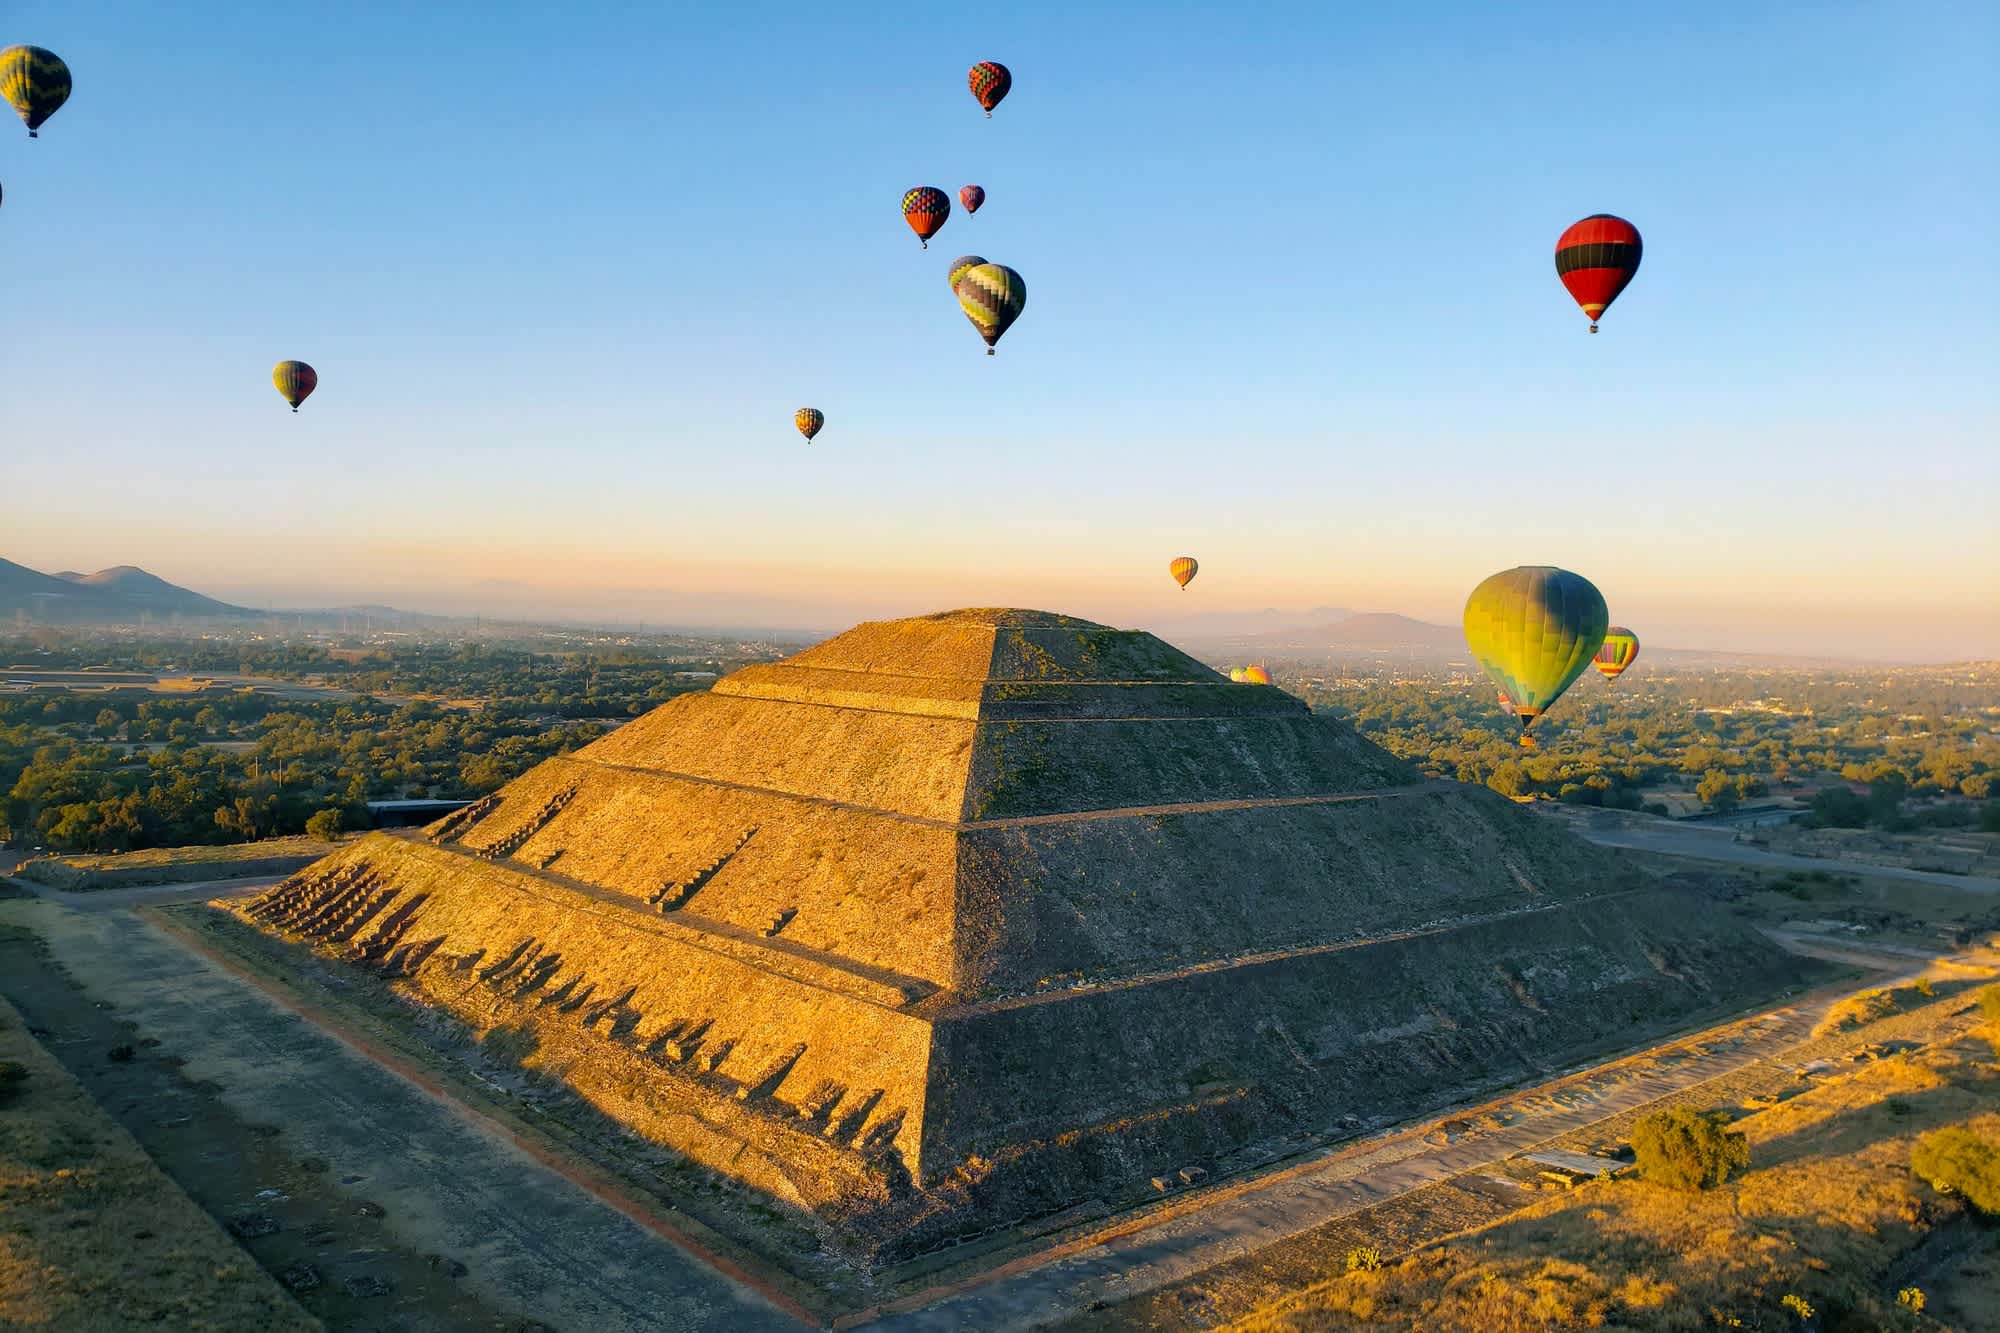 Des montgolfières dans le ciel survolent Teotihuacan au Mexique